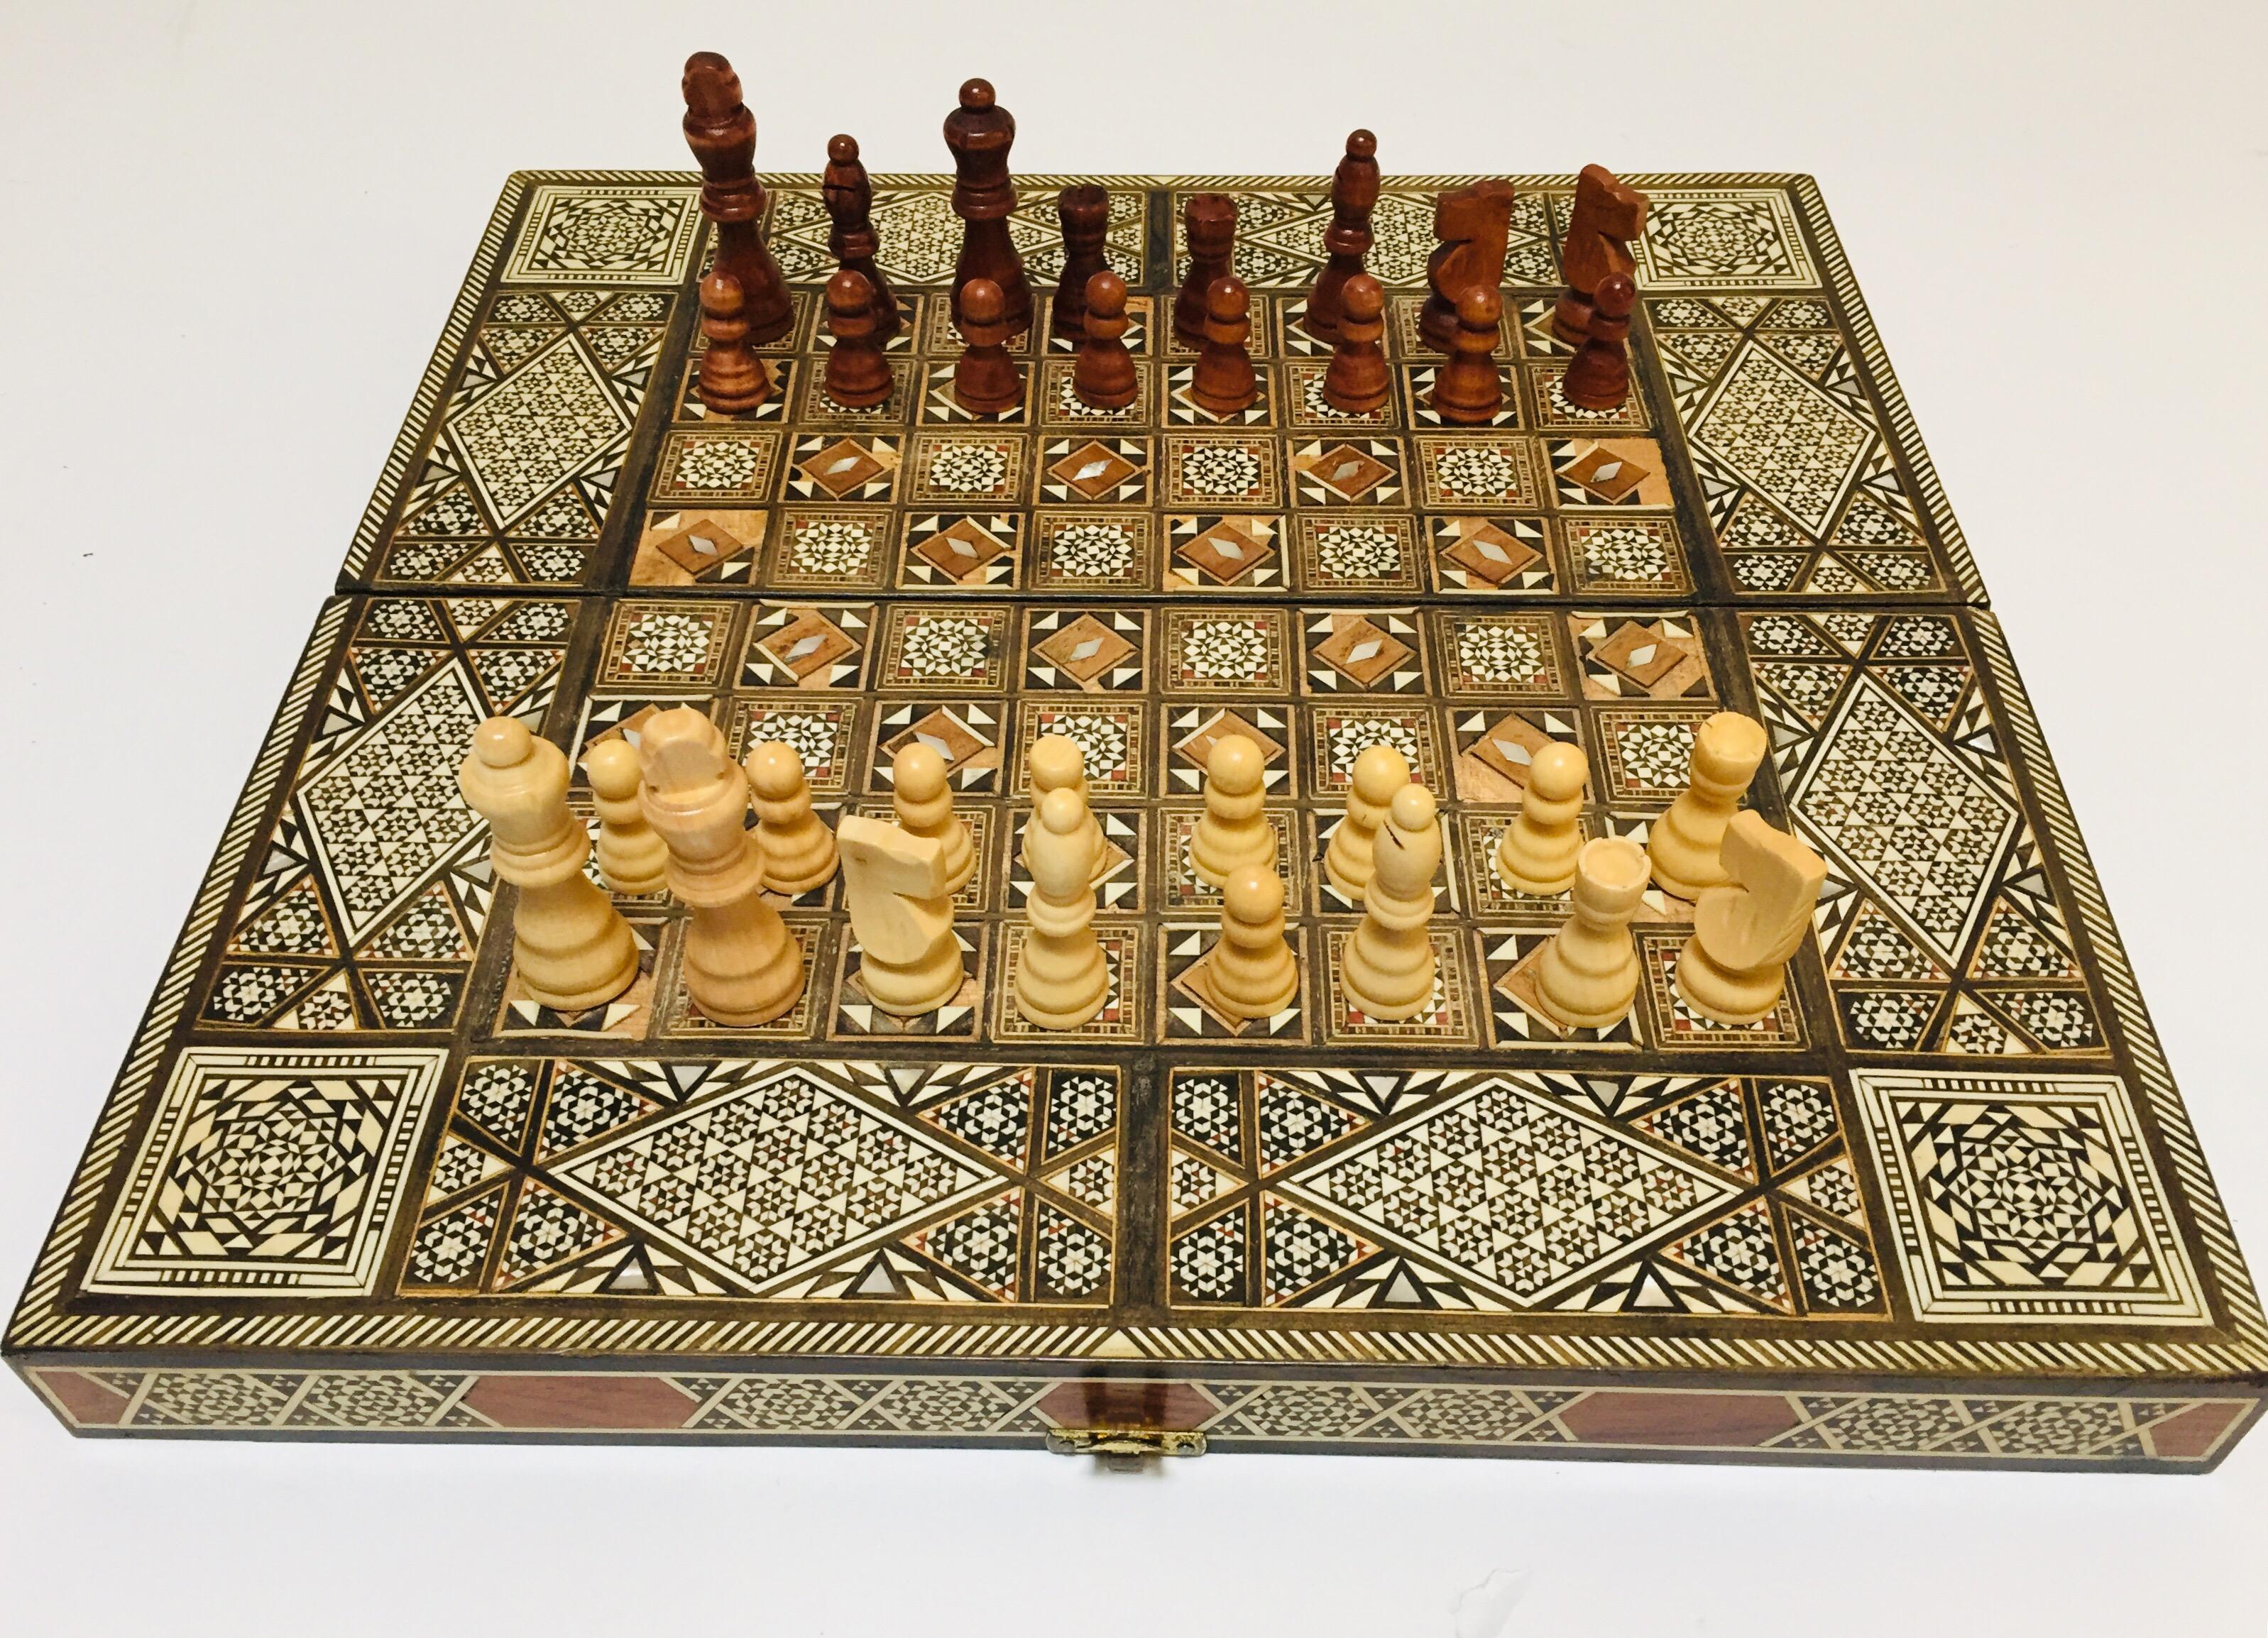 Vieux grand jeu complet de backgammon et d'echecs en mosaique incrustee syrienne 11